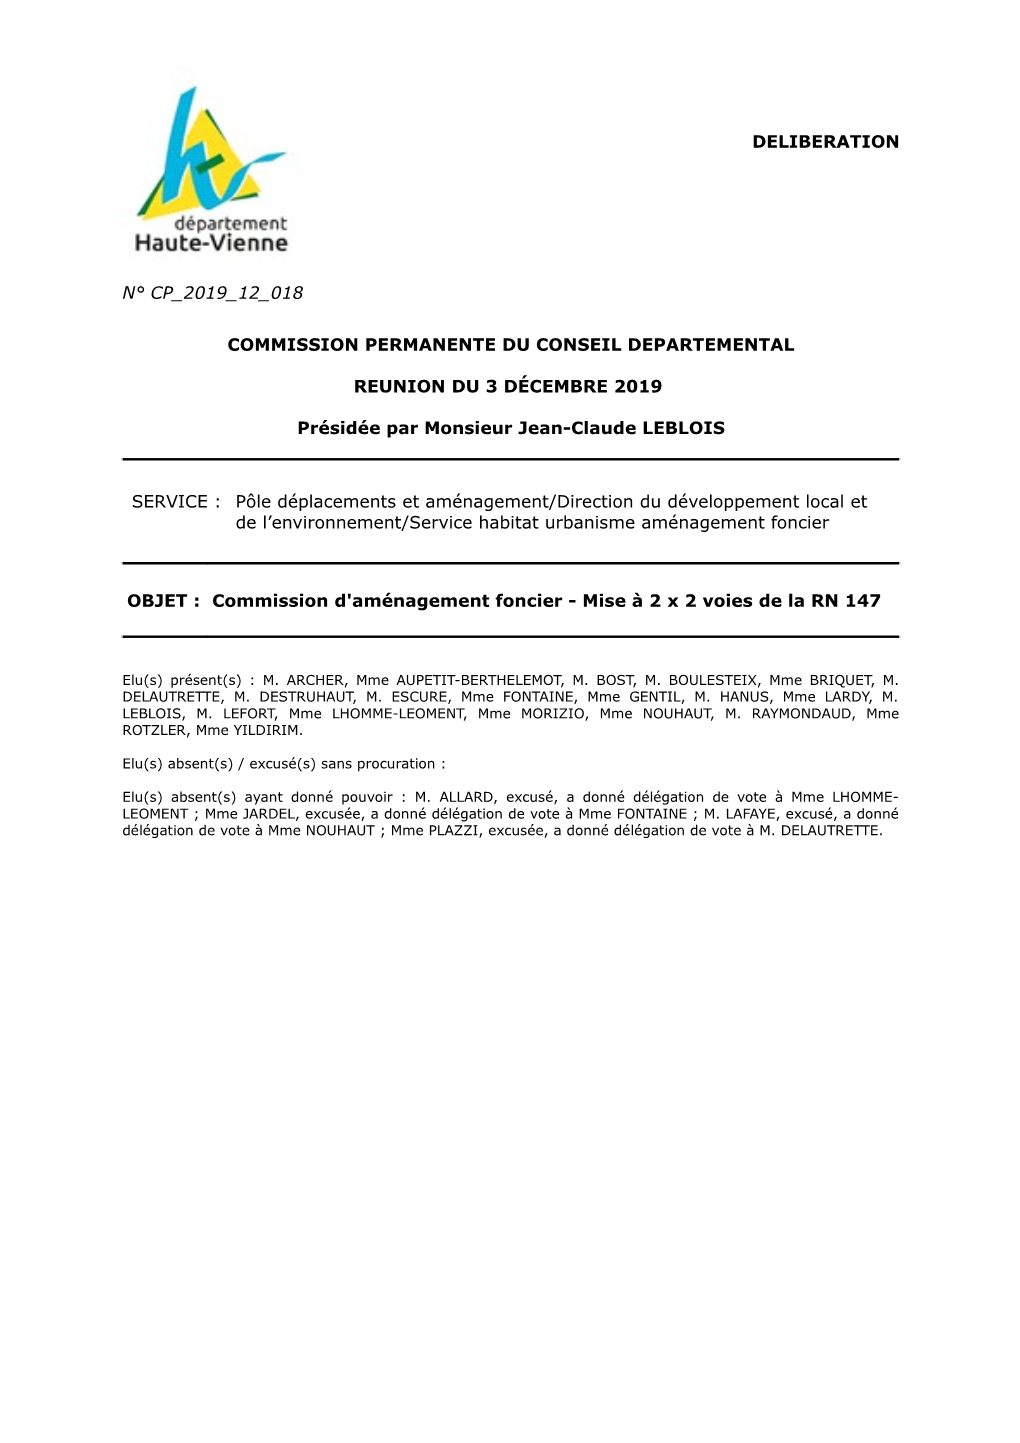 Deliberation N° Cp 2019 12 018 Commission Permanente Du